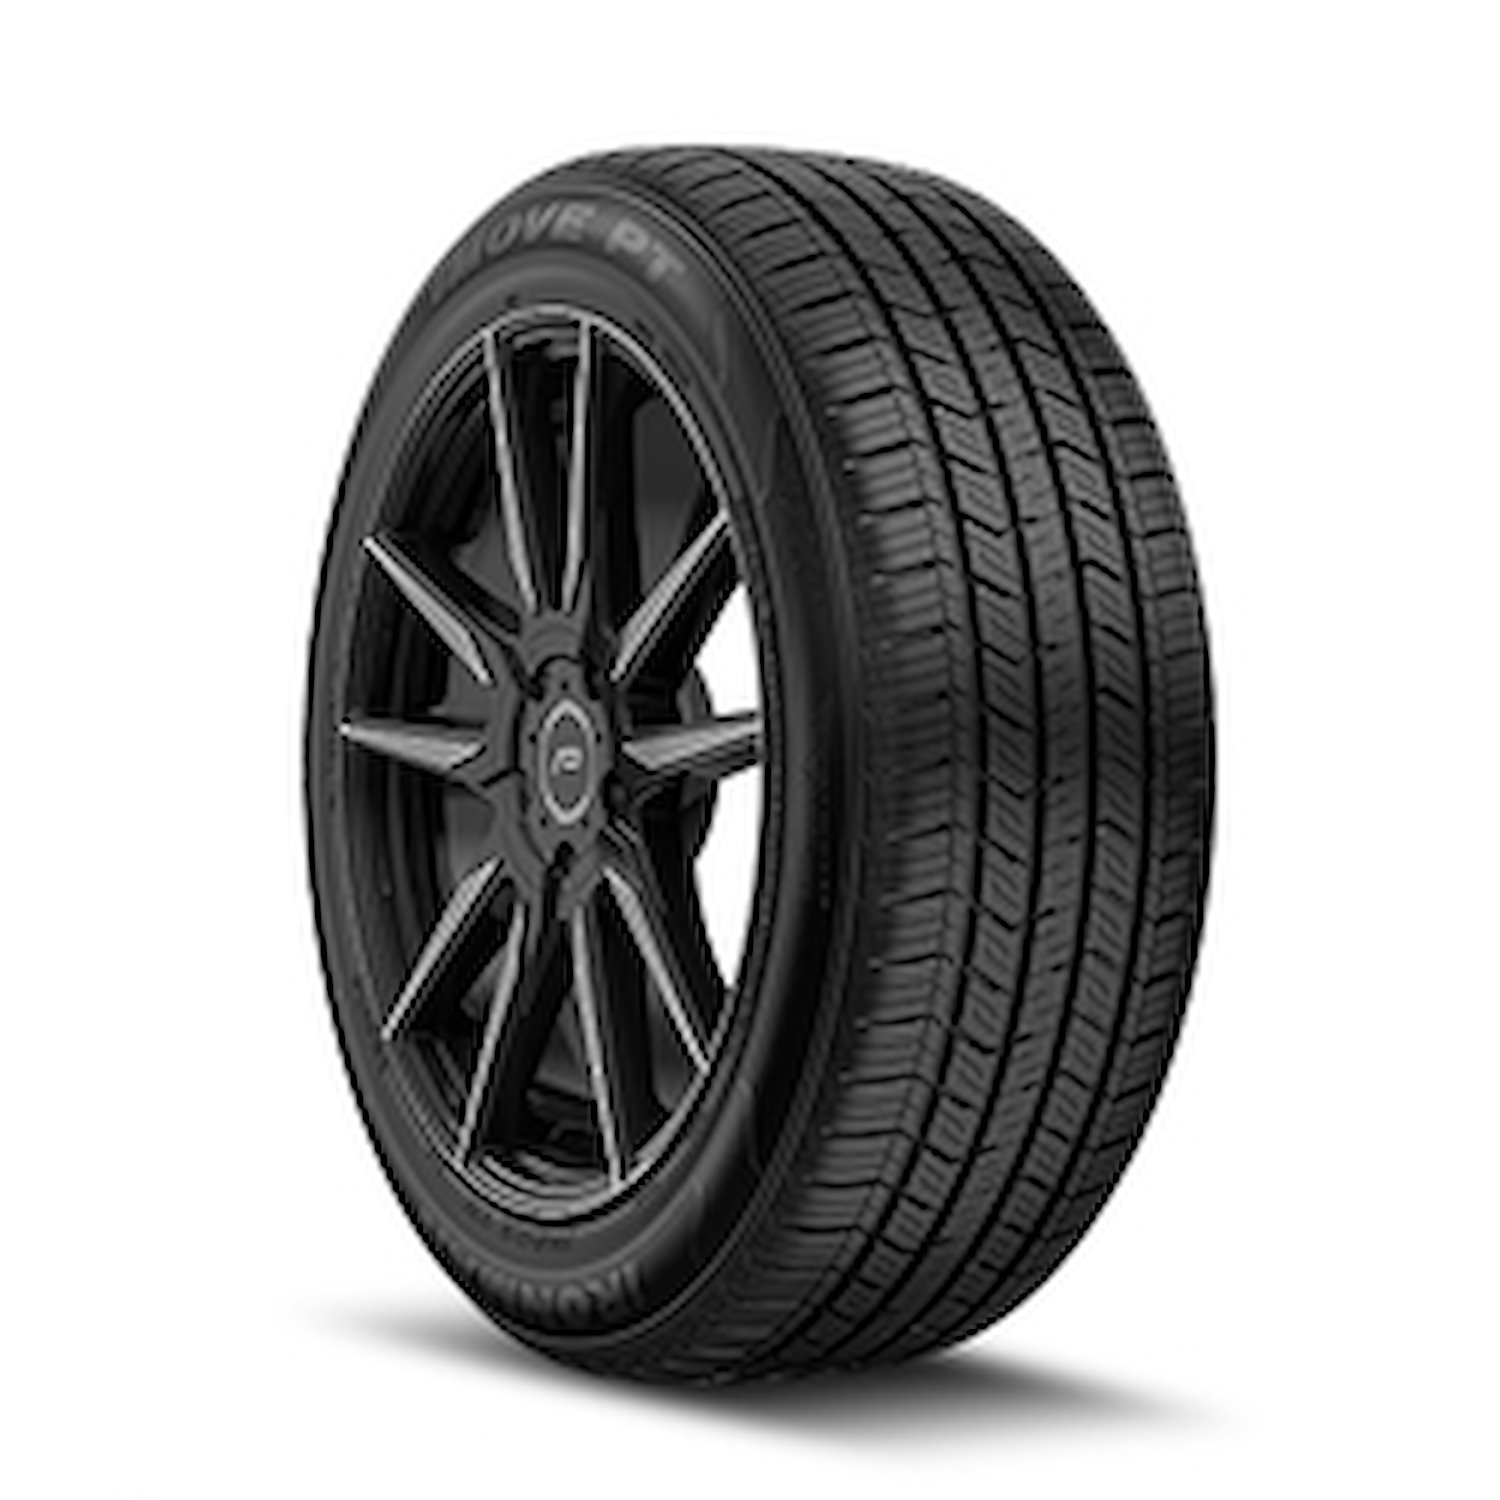 98452 iMOVE PT Tire, 225/70R15, 100T